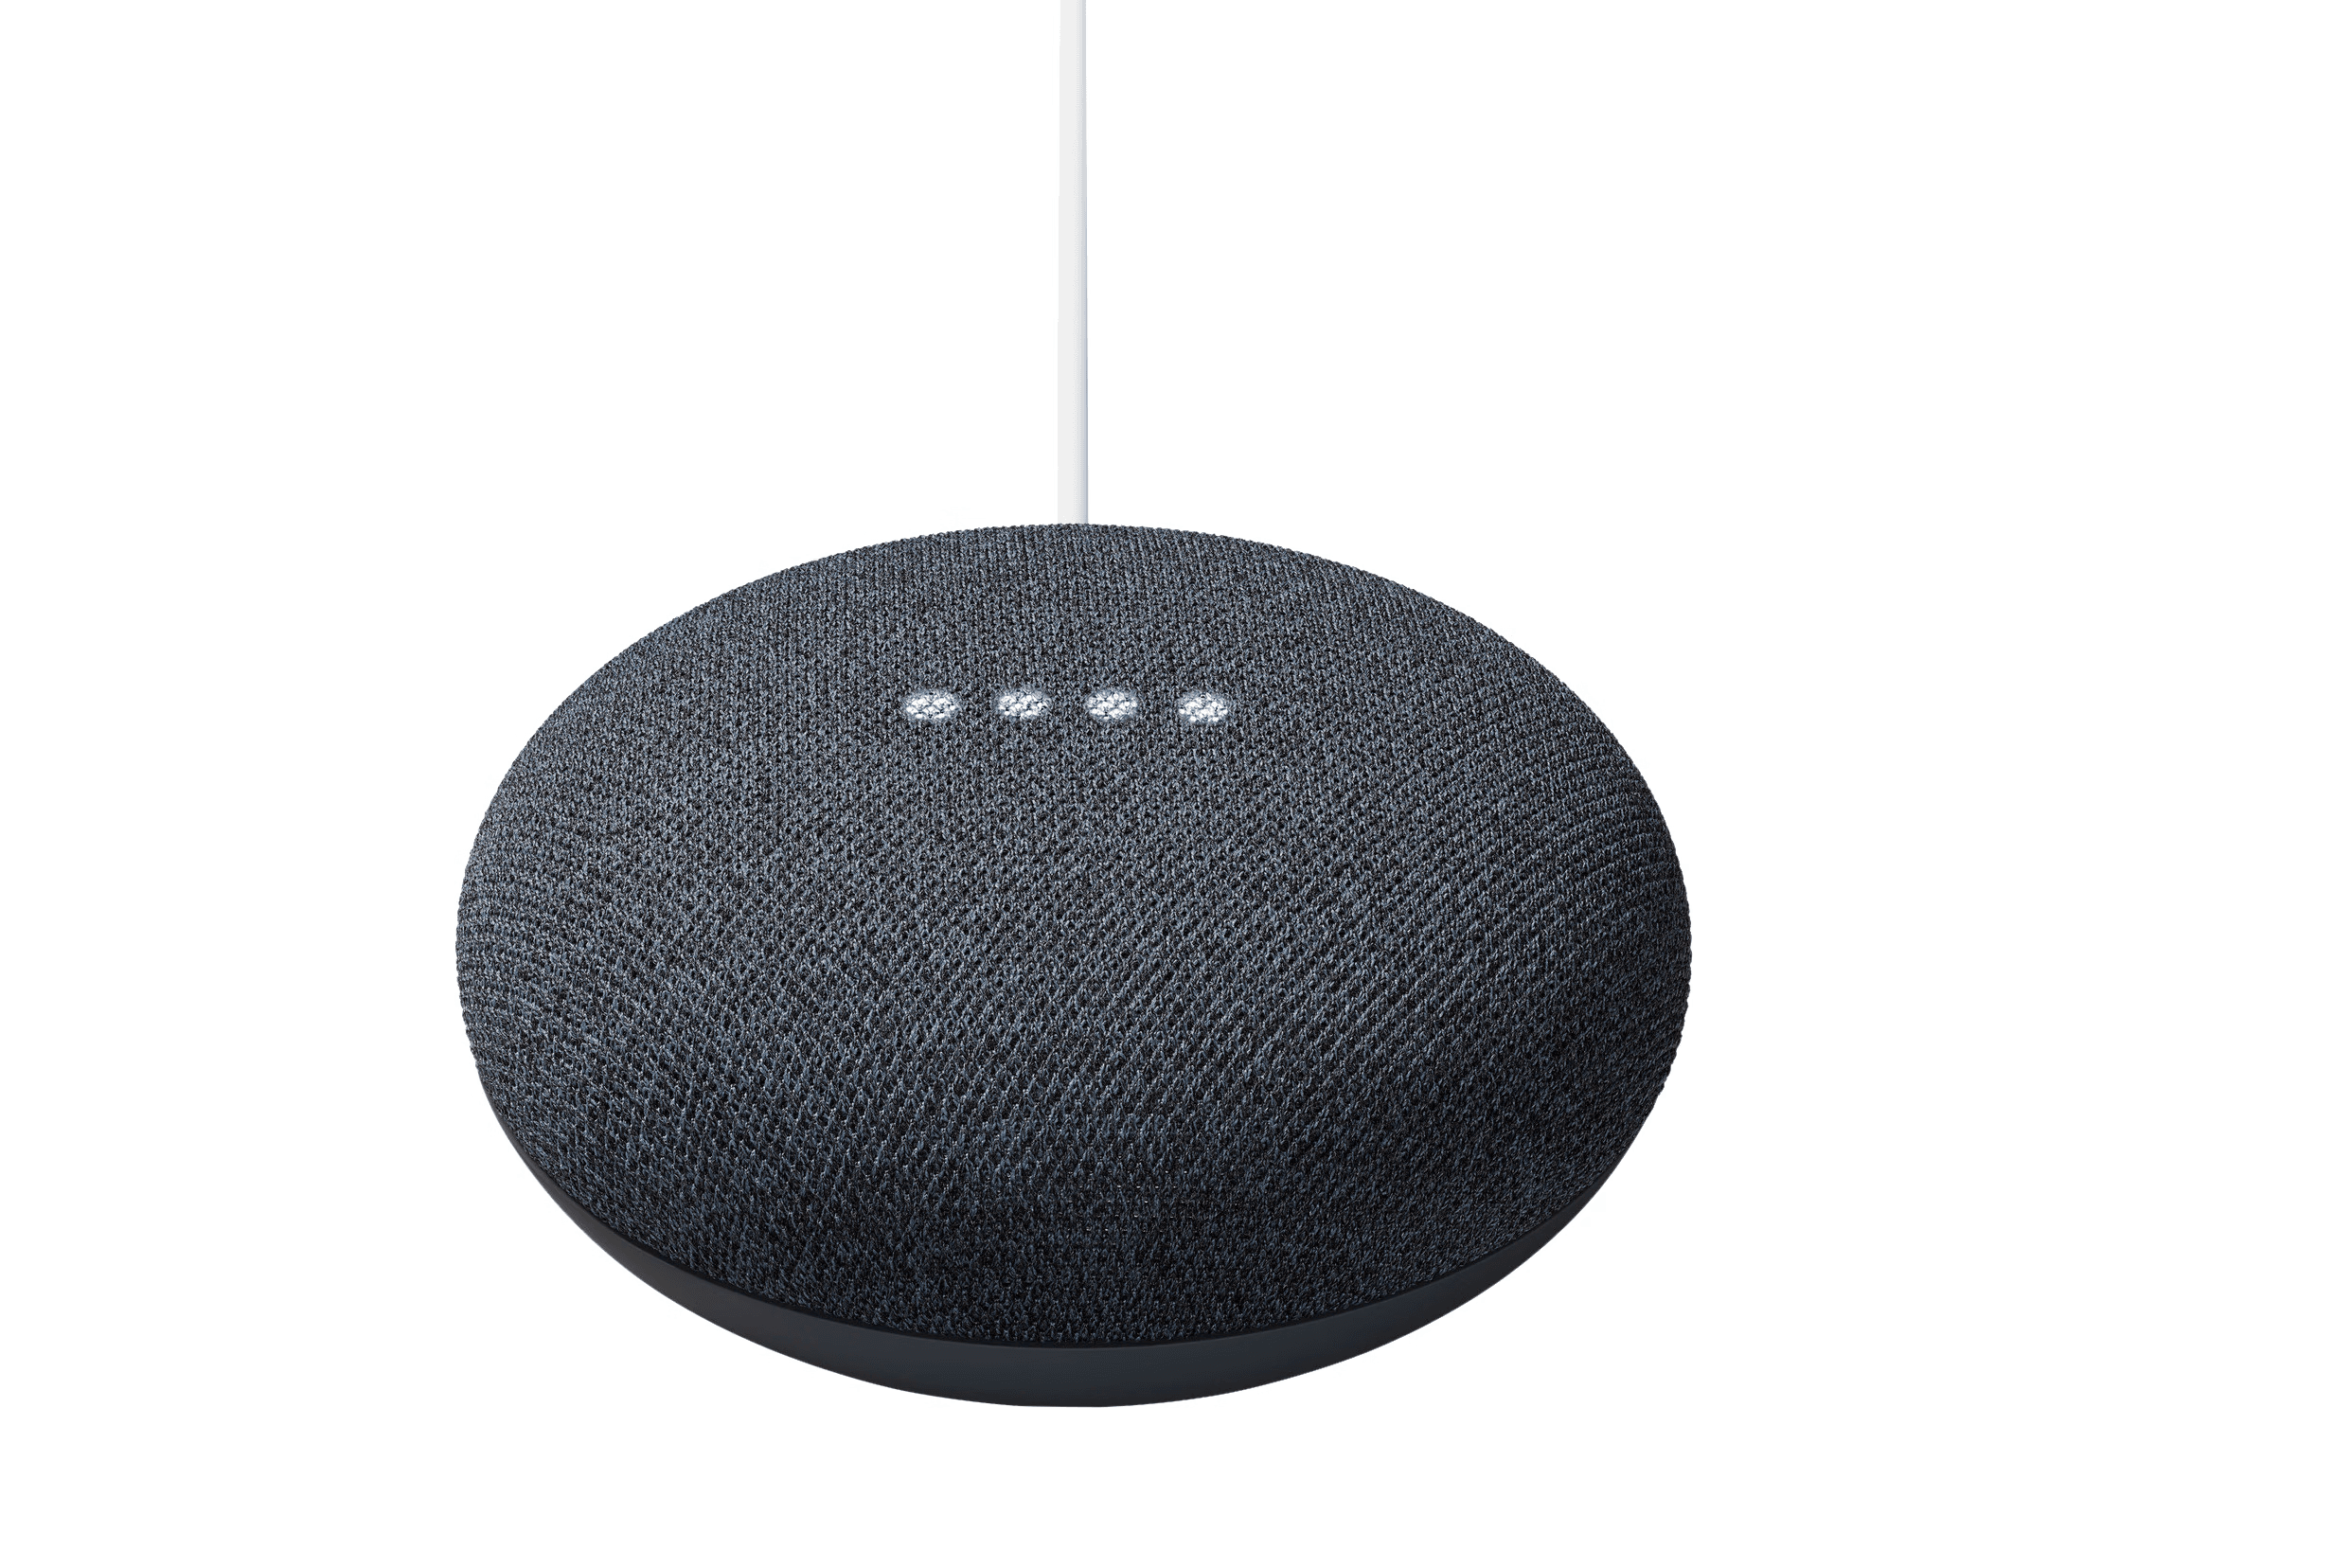 Google Nest mini speaker